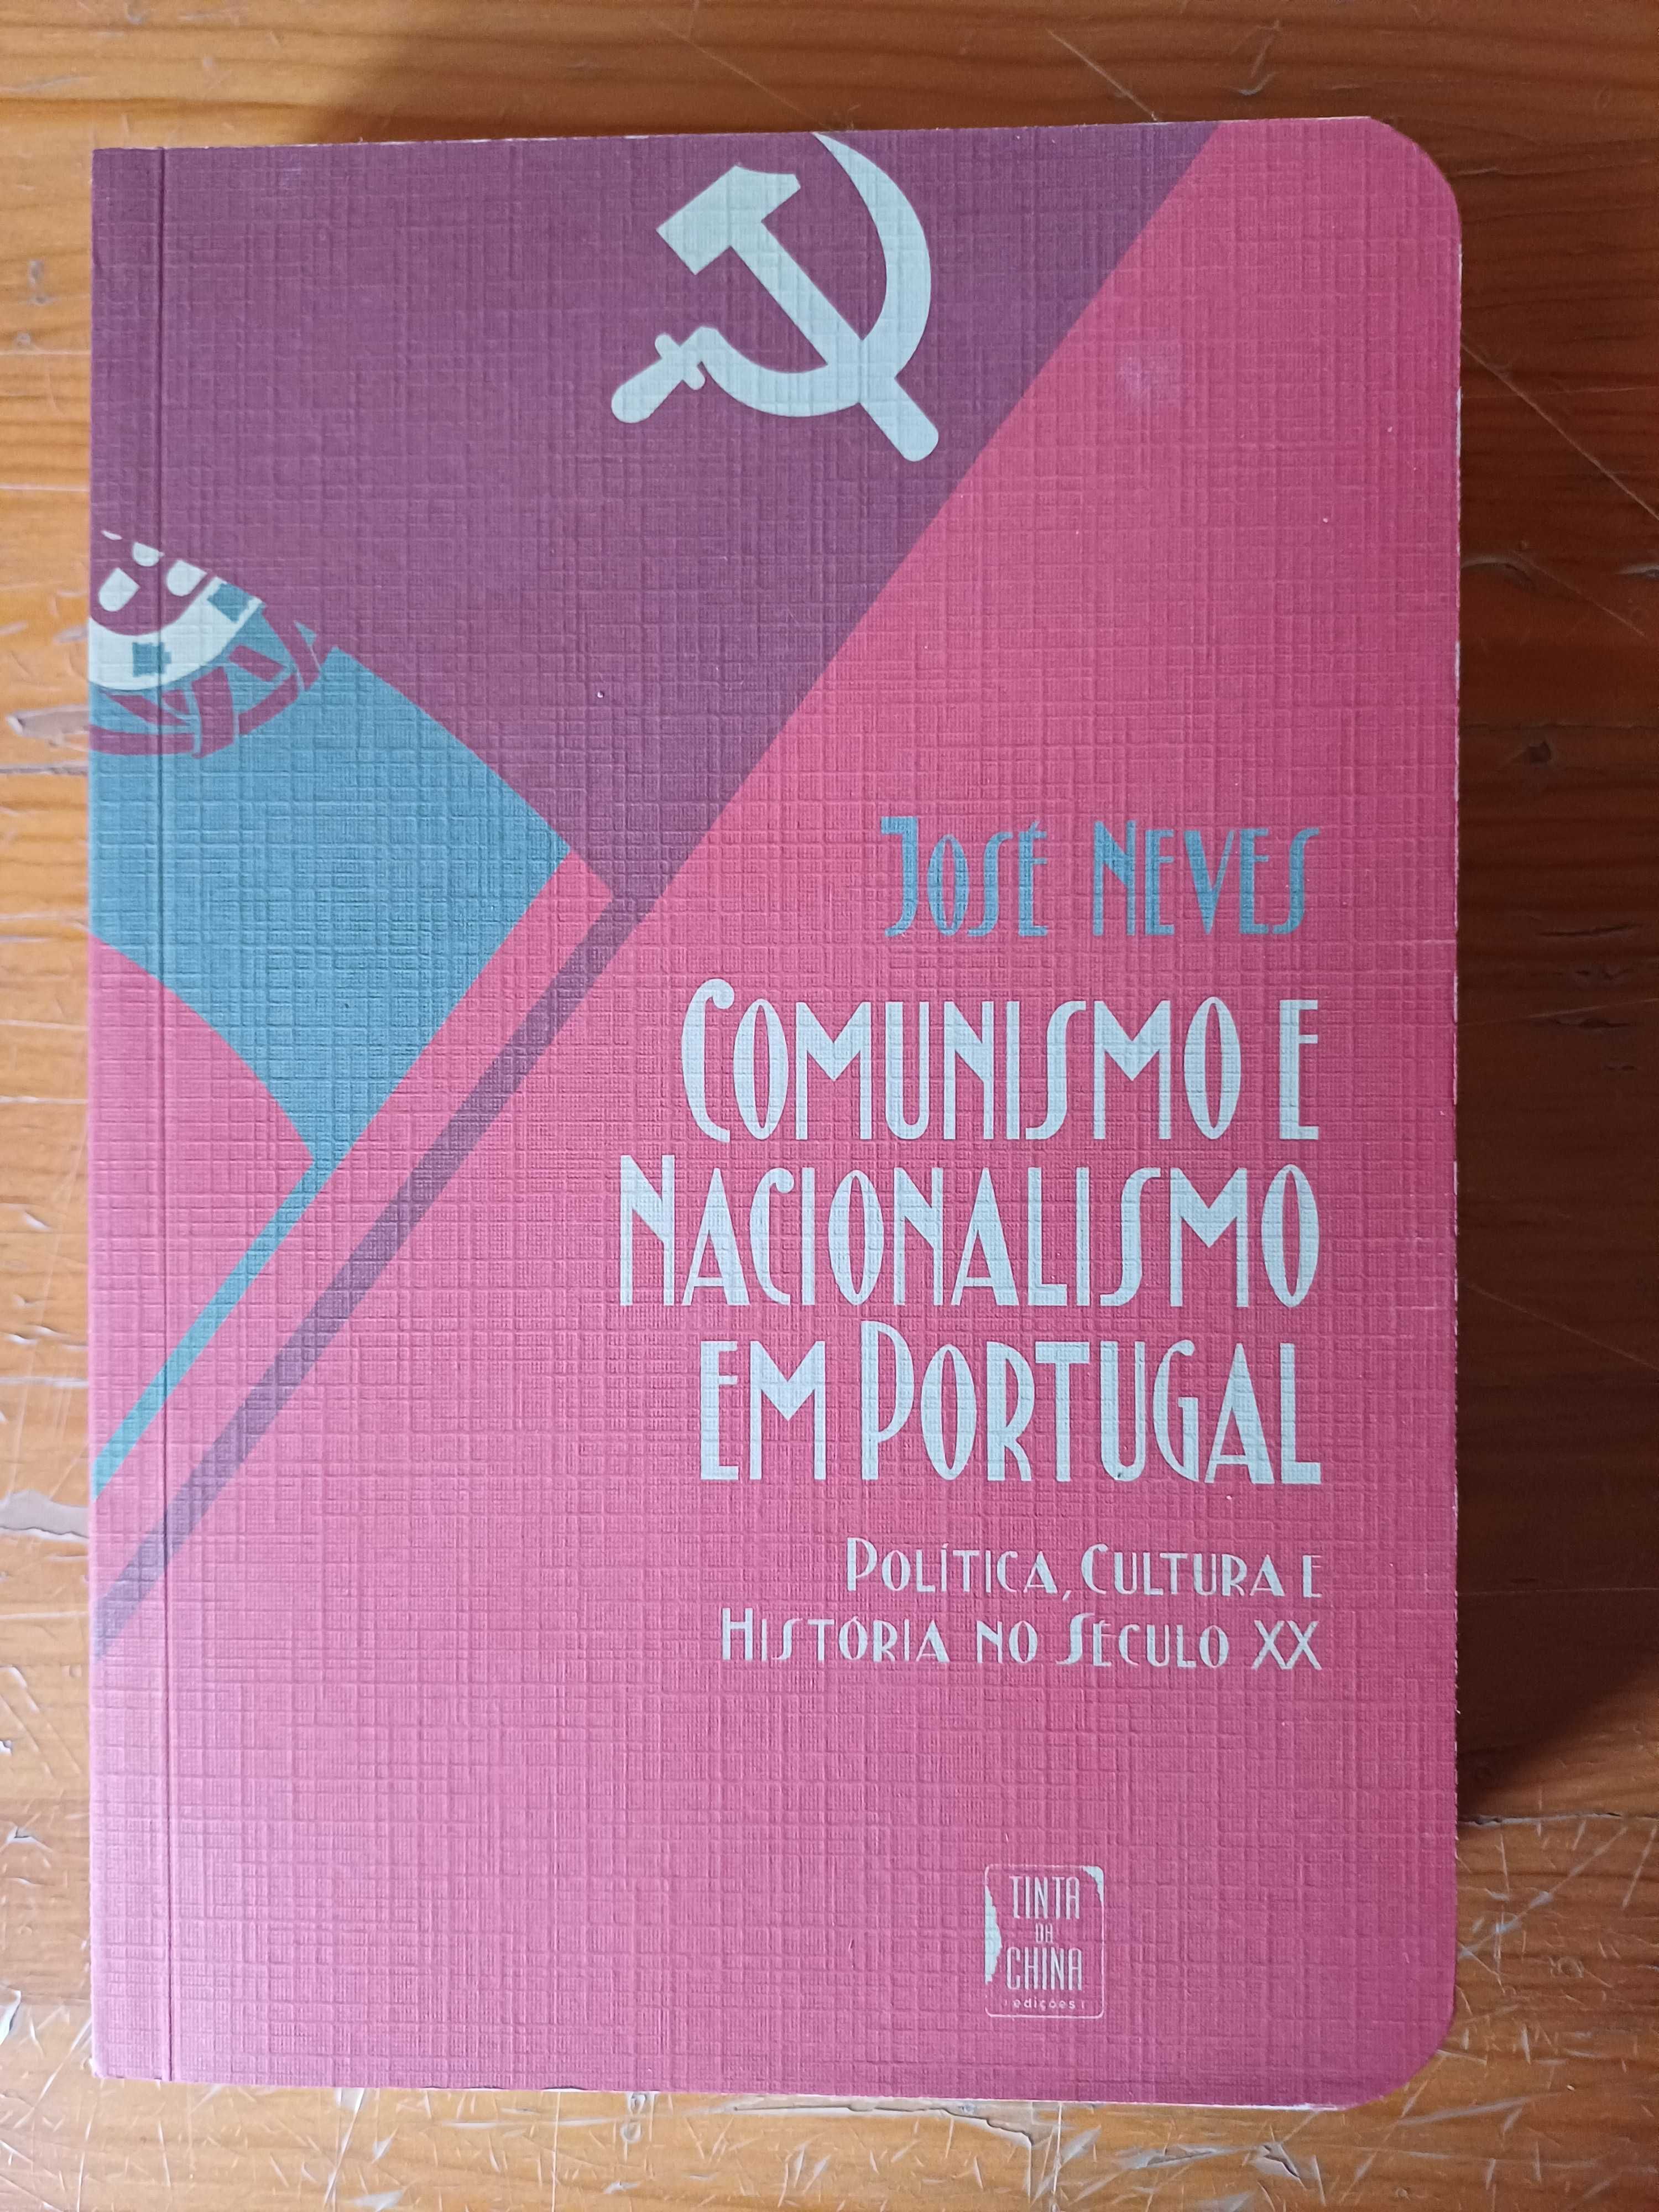 José Neves - Comunismo e Nacionalismo em Portugal